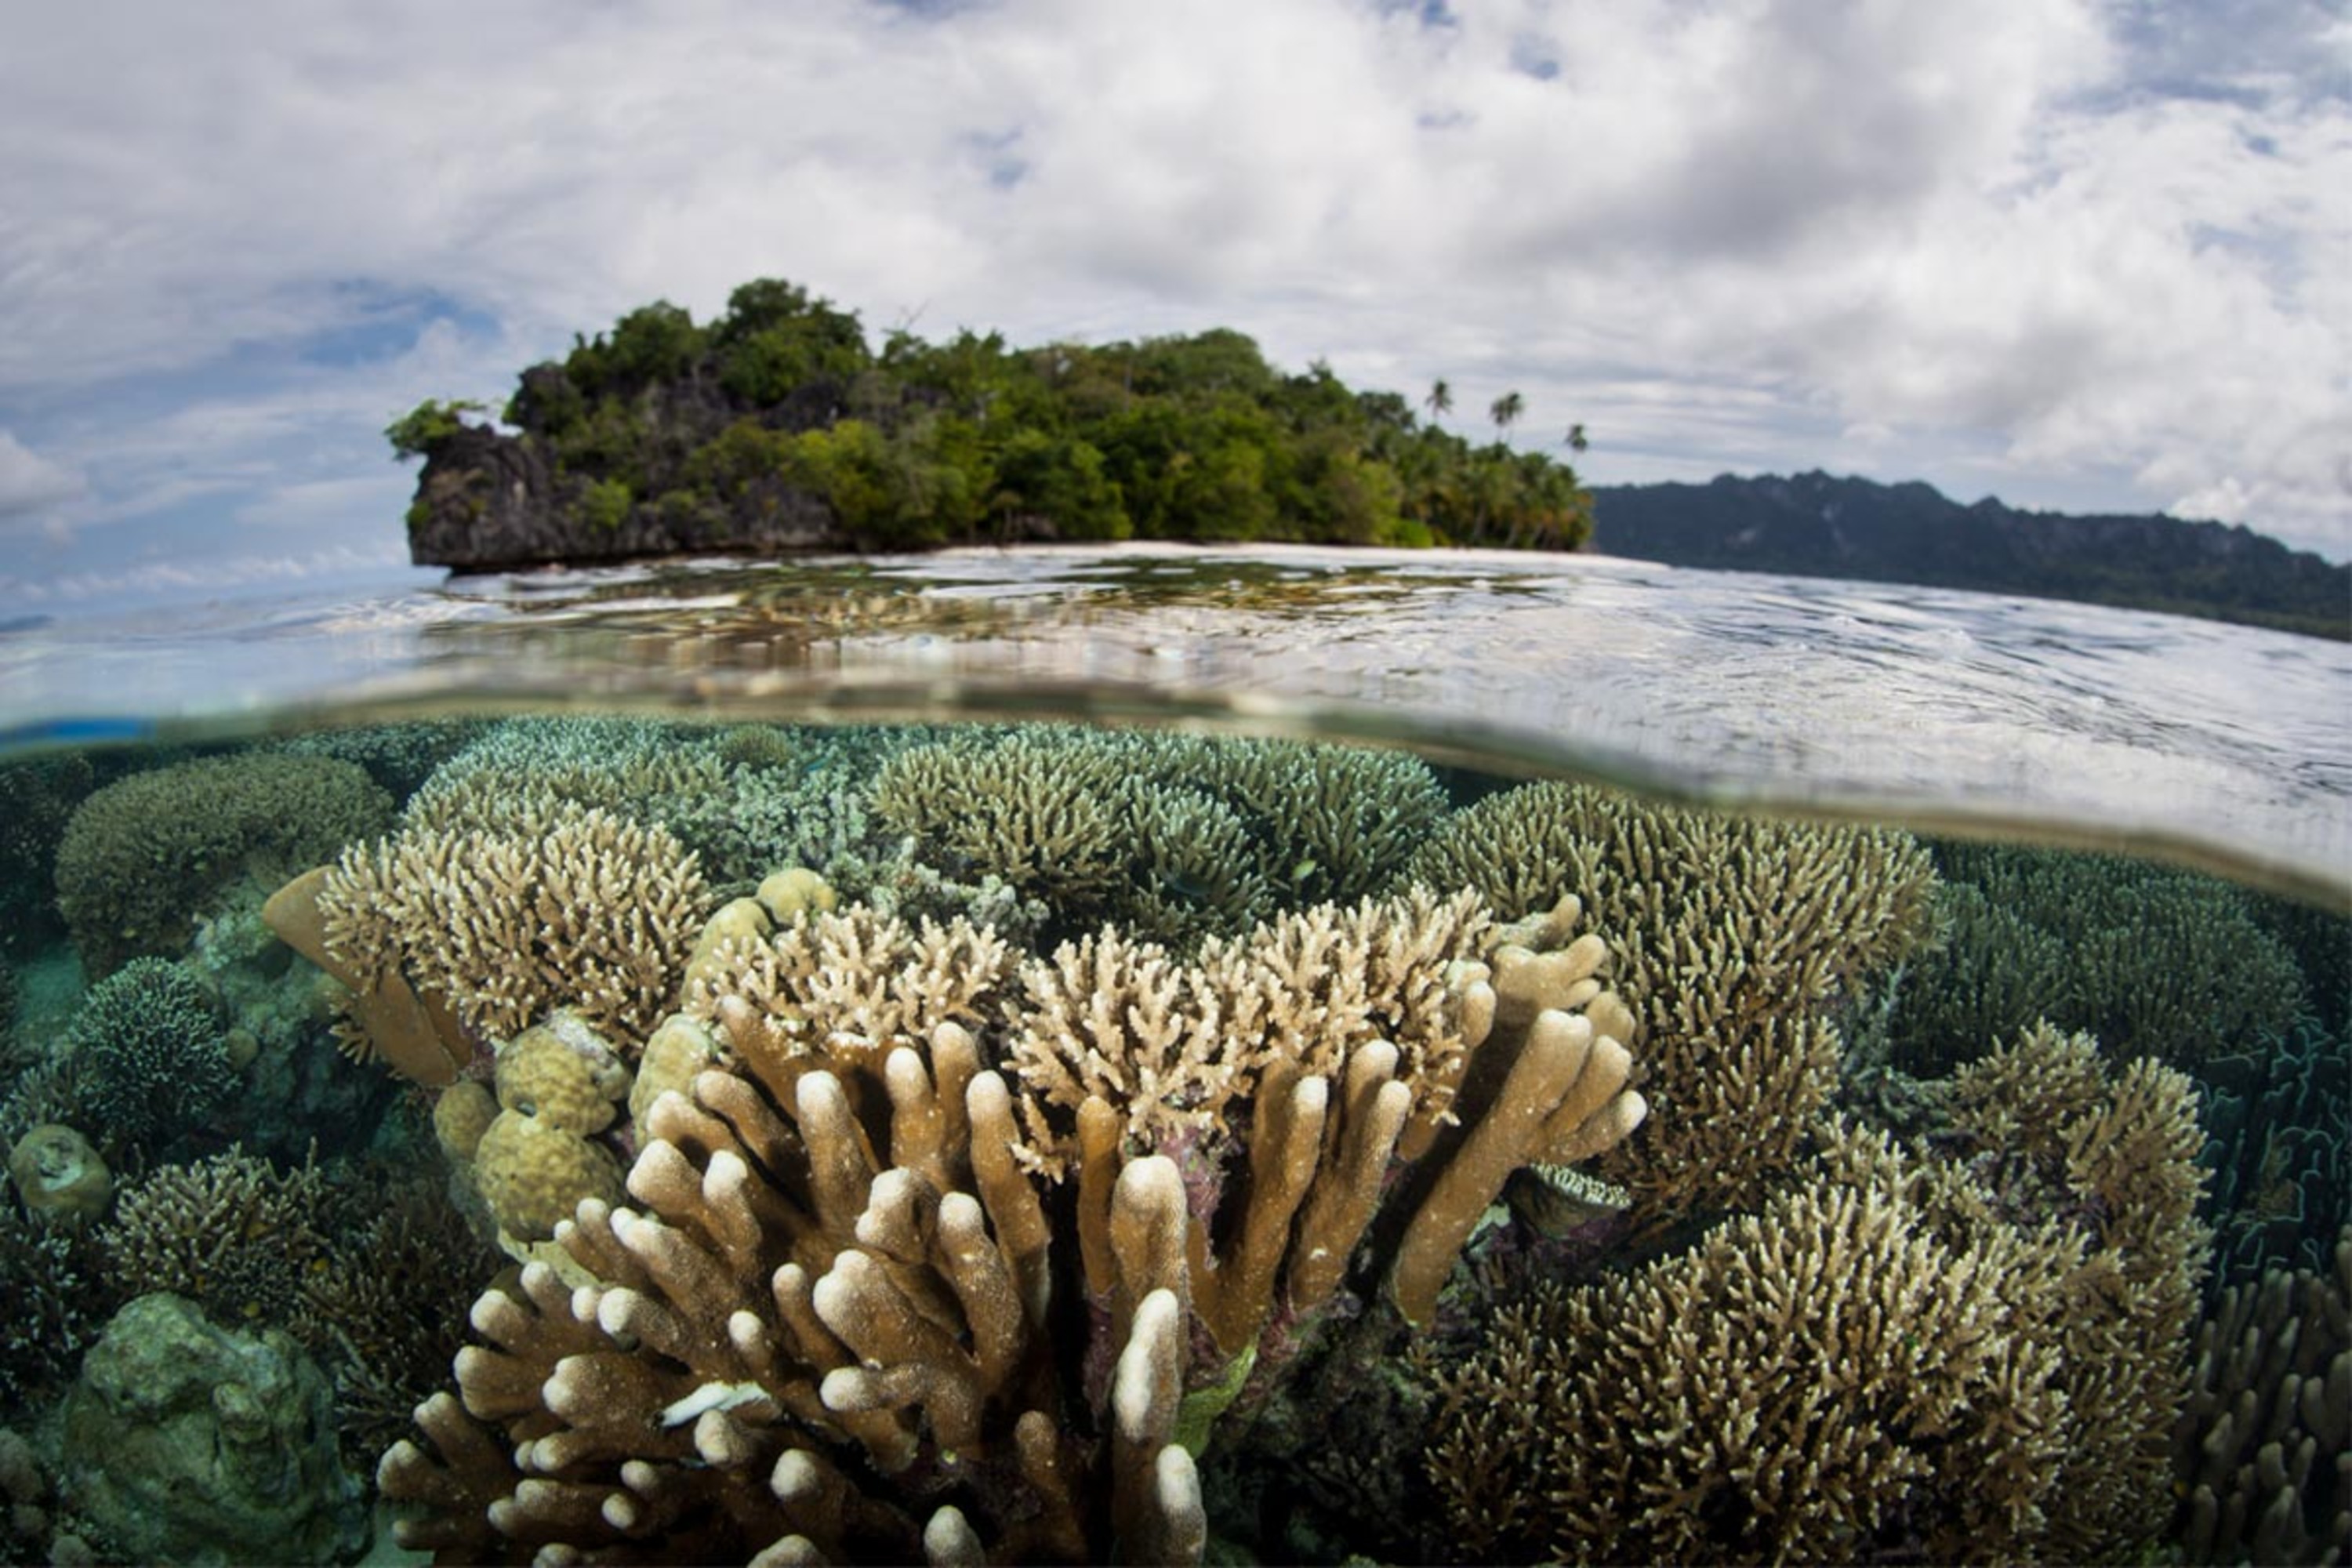 La biodiversité illustrée par cette photo aquatique montrant en premier plan la vie sous l'eau (corail, algues sable) et en second plan la vie hors de l'eau (arbres, ciel et nuages)